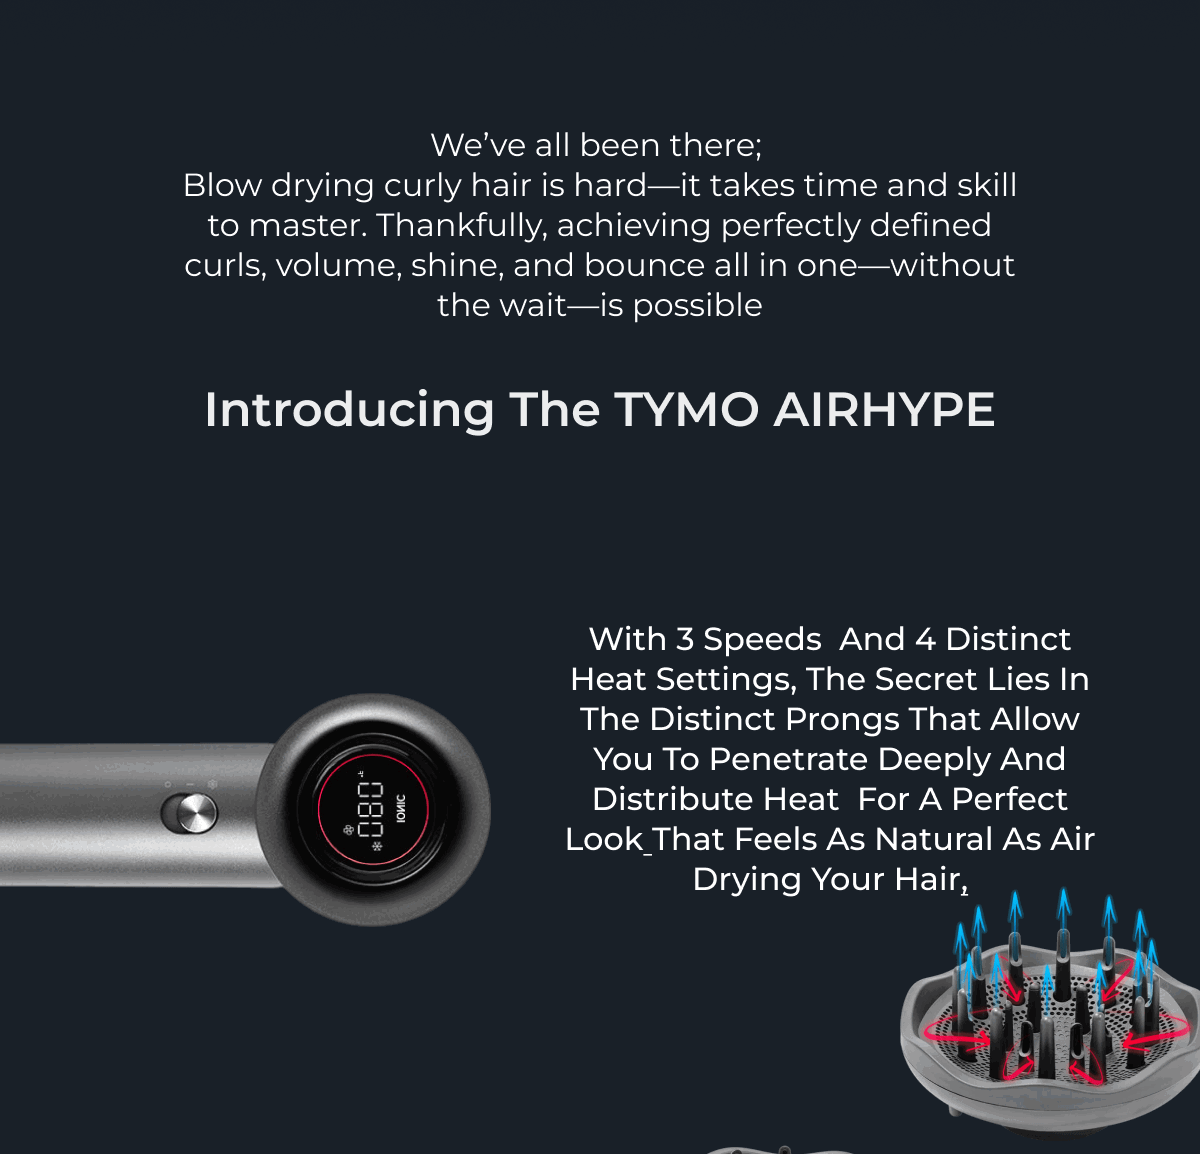 Introducing: TYMO PORTA - TYMO